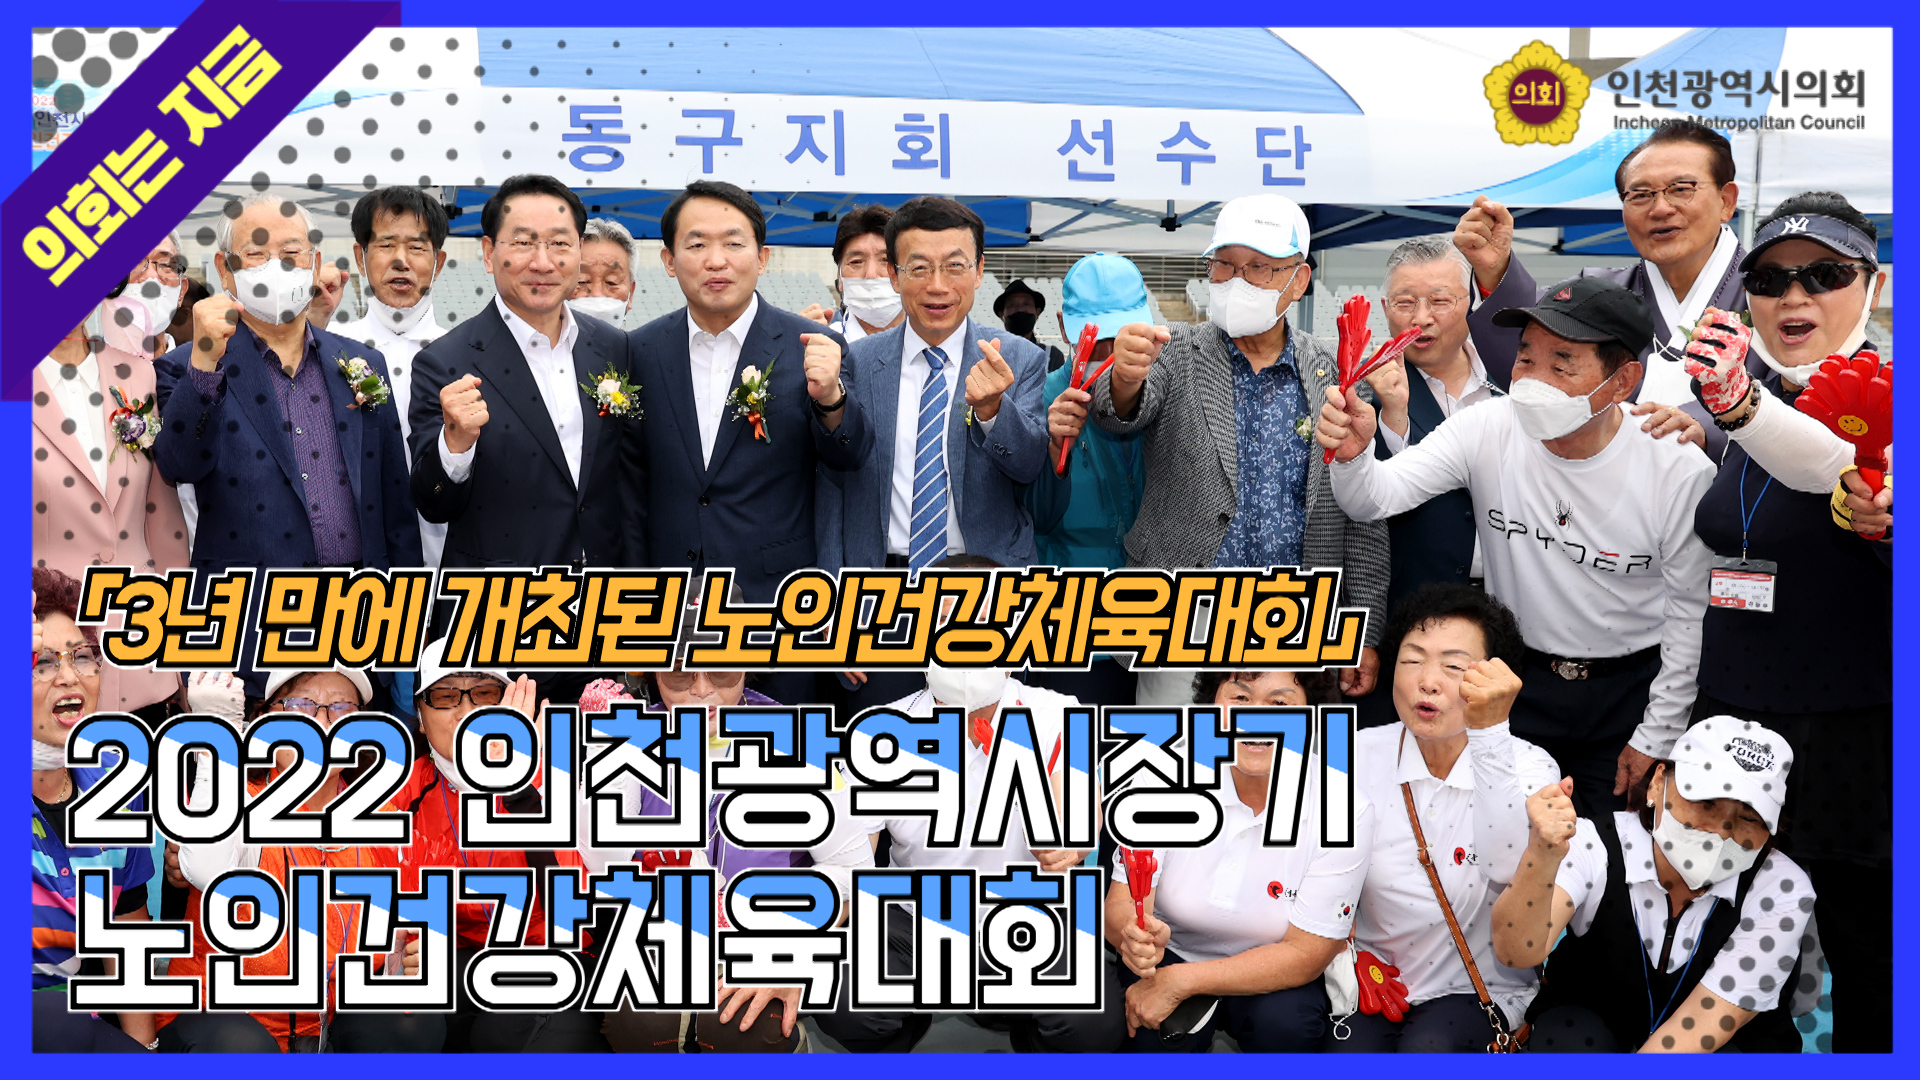  2022 인천광역시장기 노인건강체육대회 사진